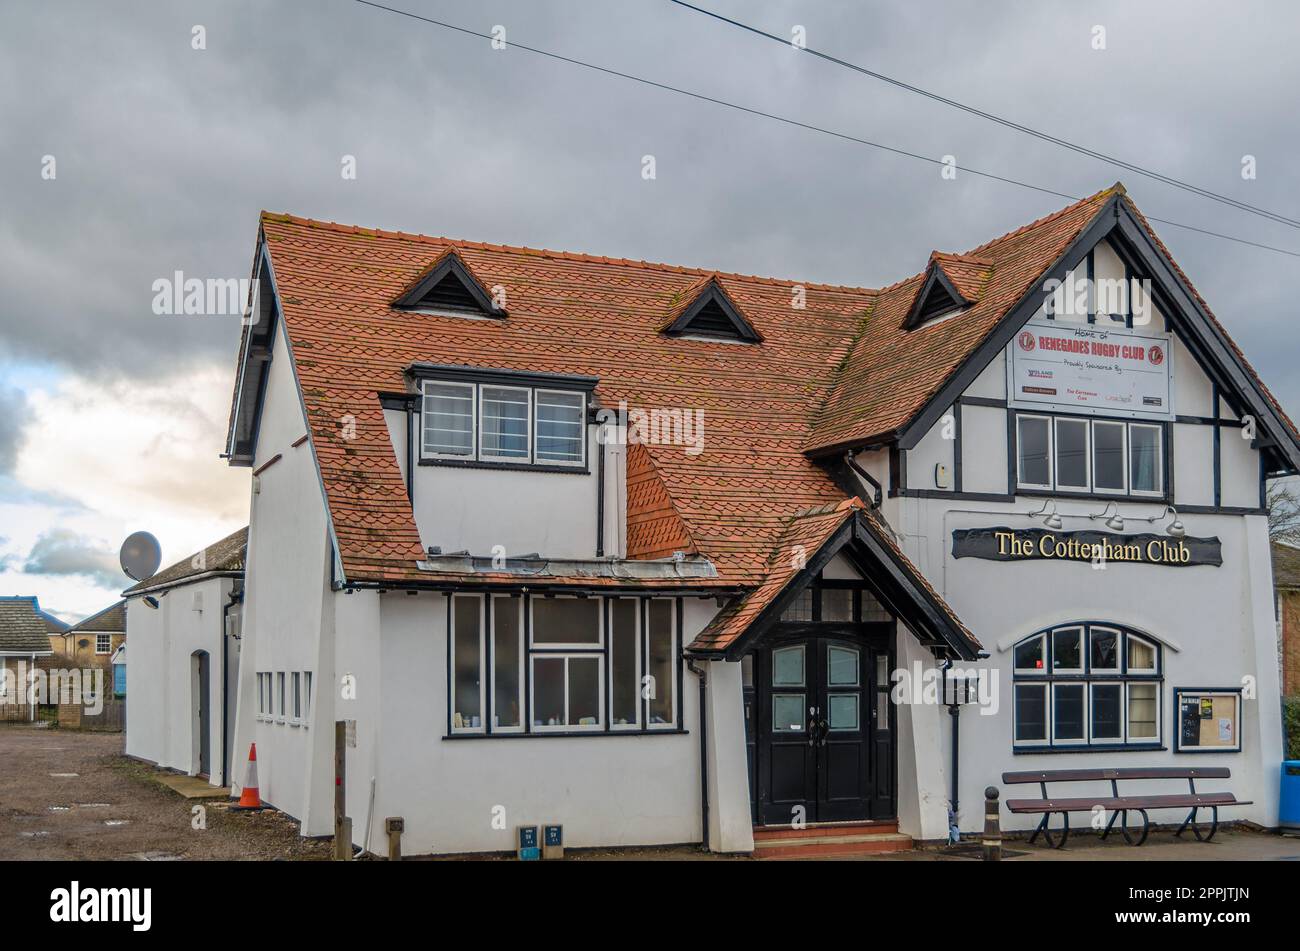 COTTENHAM, INGHILTERRA, Regno Unito - 30 DICEMBRE 2013: Architettura tipica inglese nel villaggio di Cottenham, Cambridgeshire, Inghilterra, Regno Unito Foto Stock